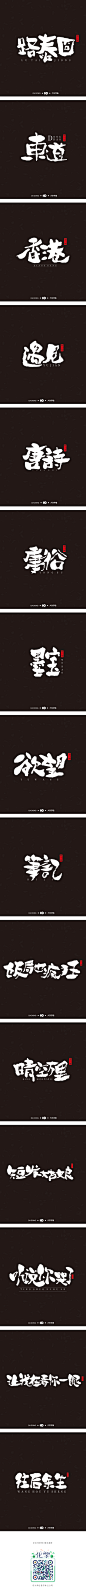 韩大东《字迹3》-字体传奇网-中国首个字体品牌设计师交流网